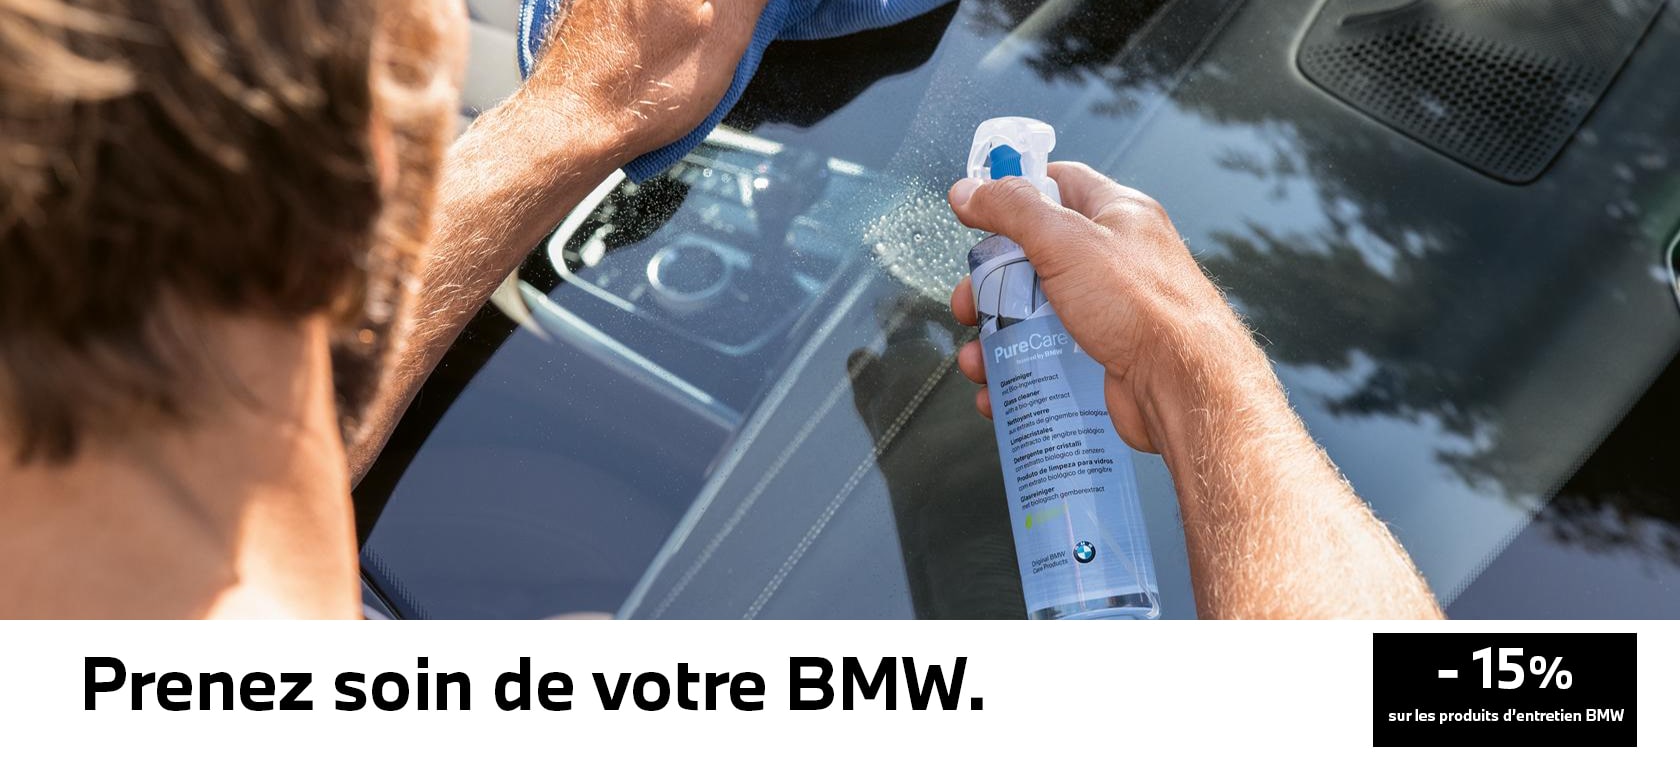 produit entretien BMW